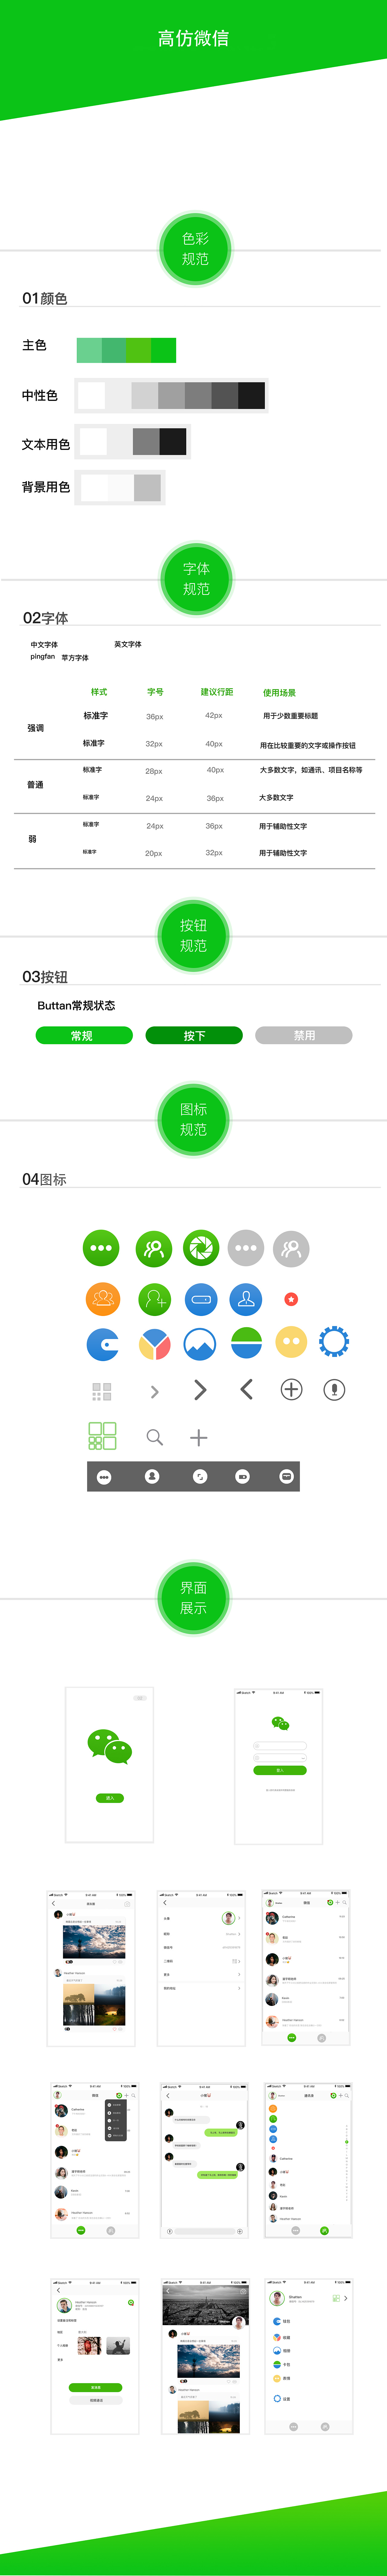 B0573-新版即时通讯社交社区聊天源码 Android IOS源码 仿微信